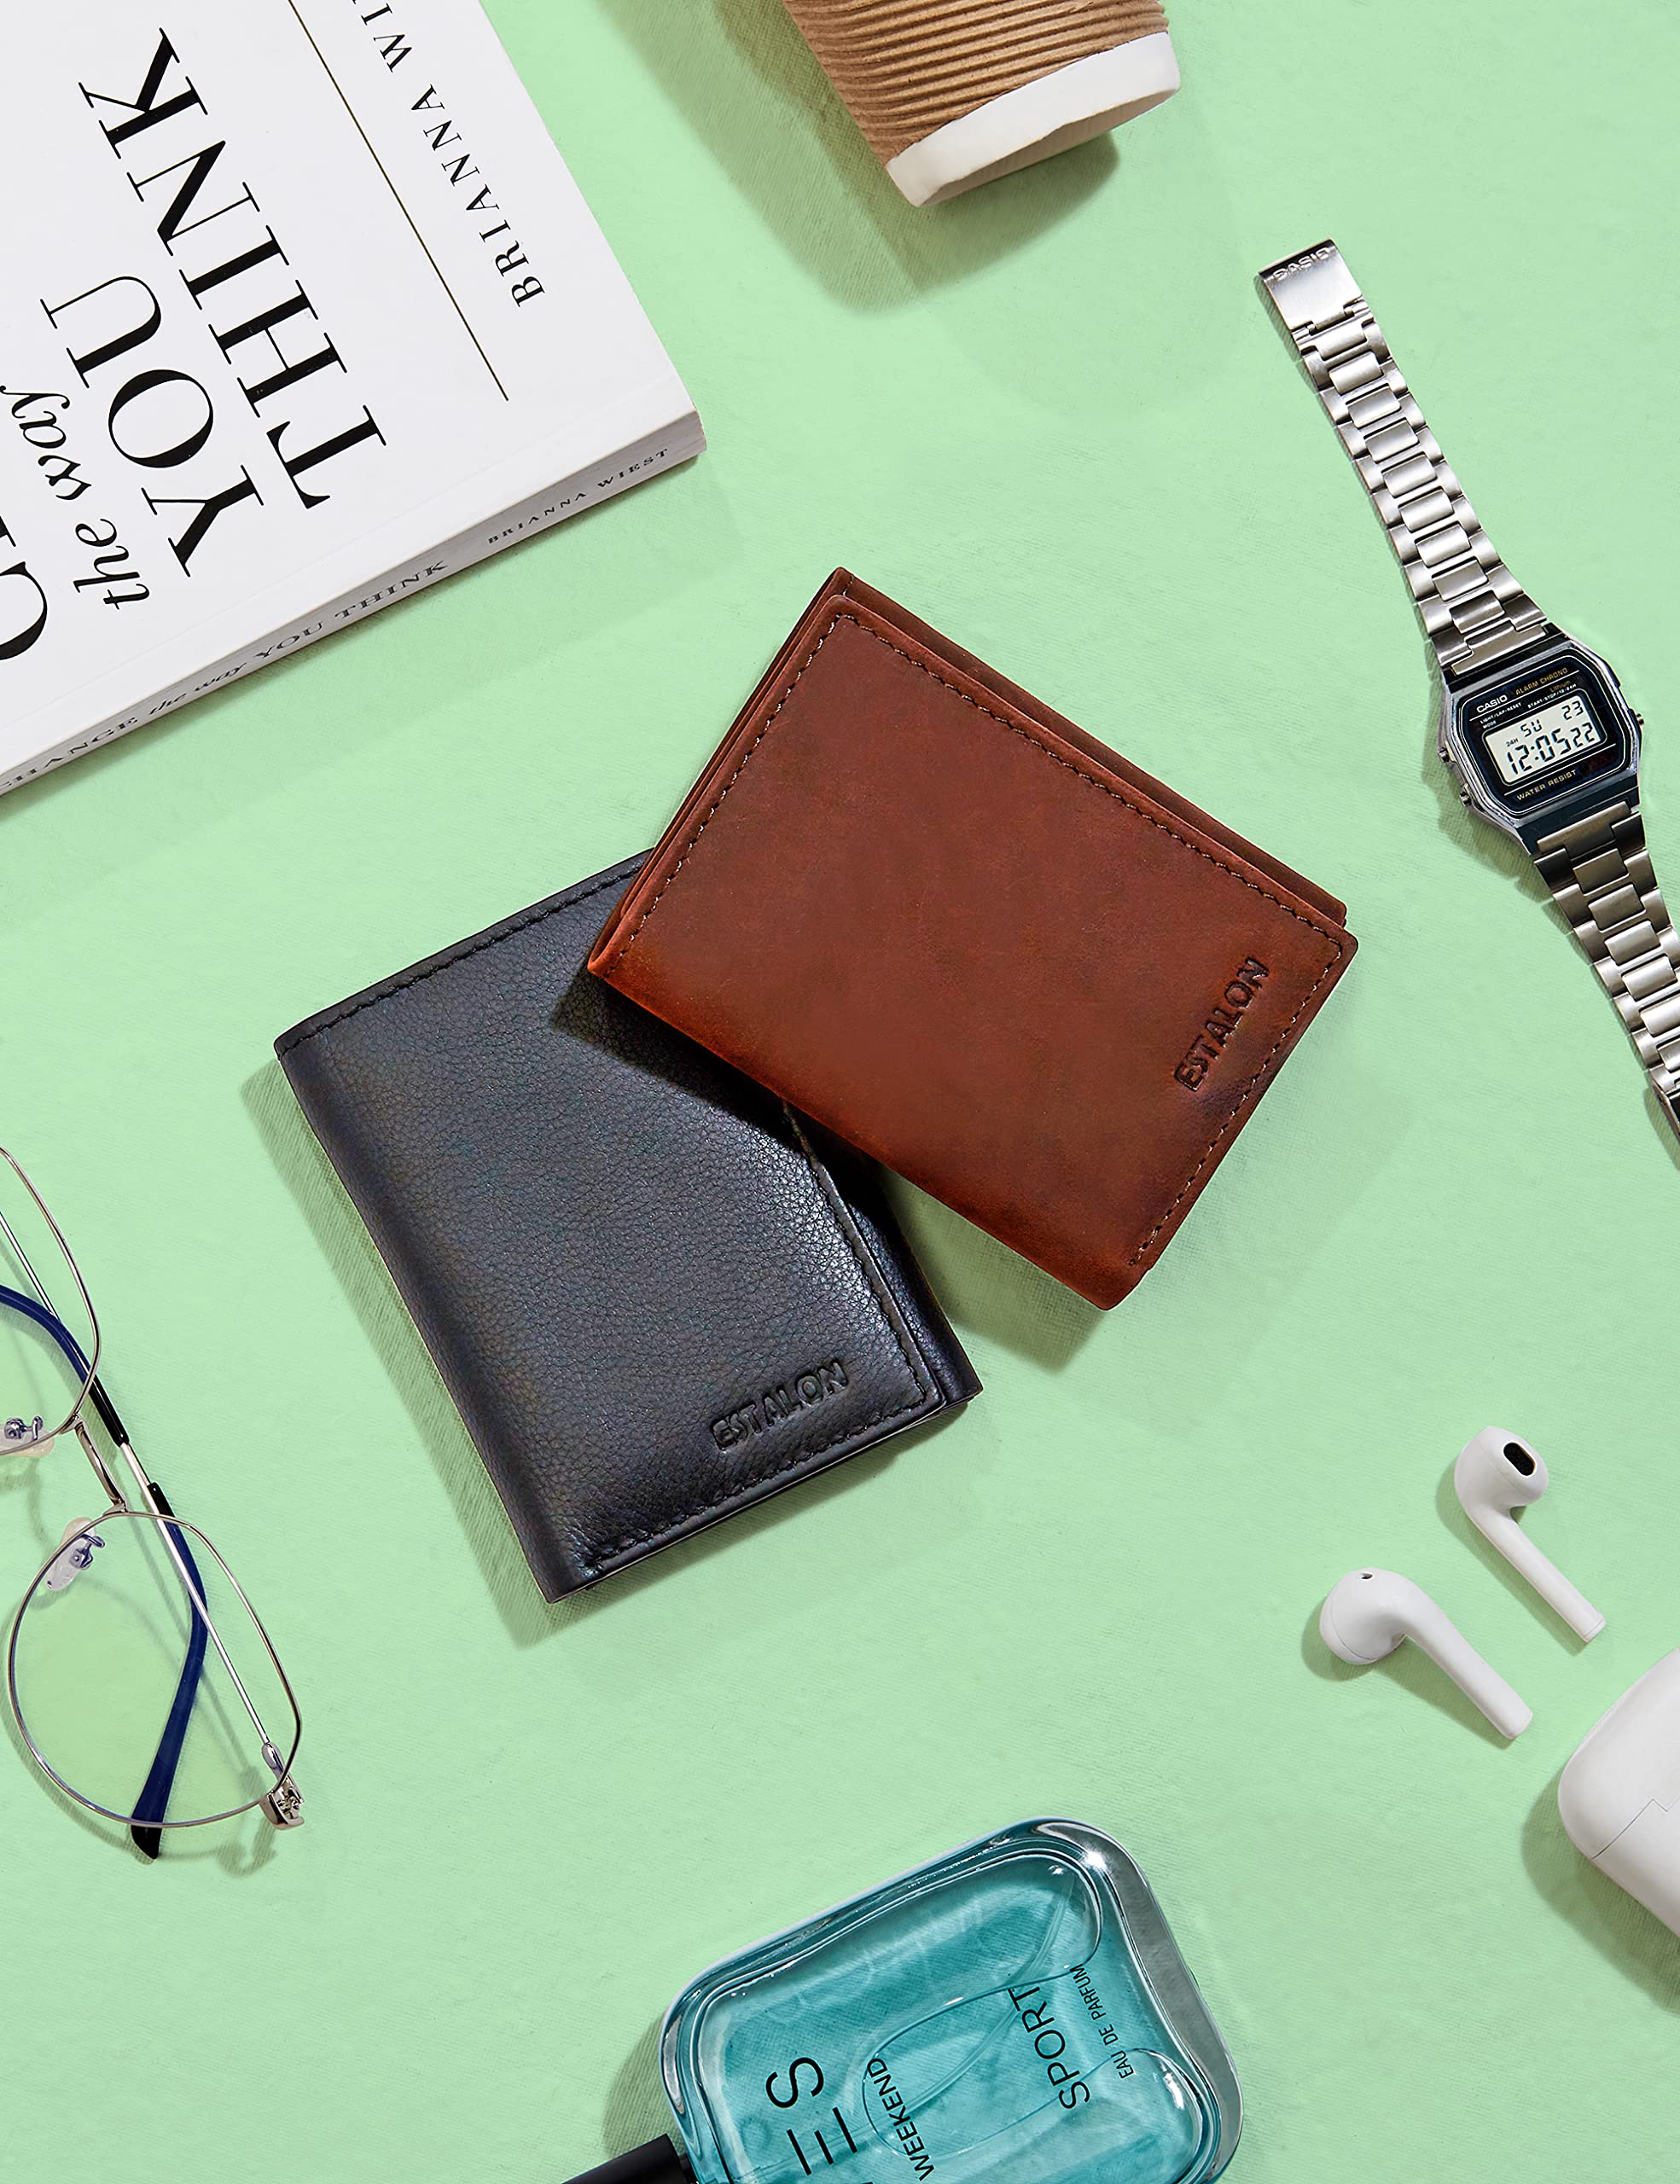 ESTALON Slim RFID Wallets for Men - Genuine Leather Front Pocket Trifold Wallet